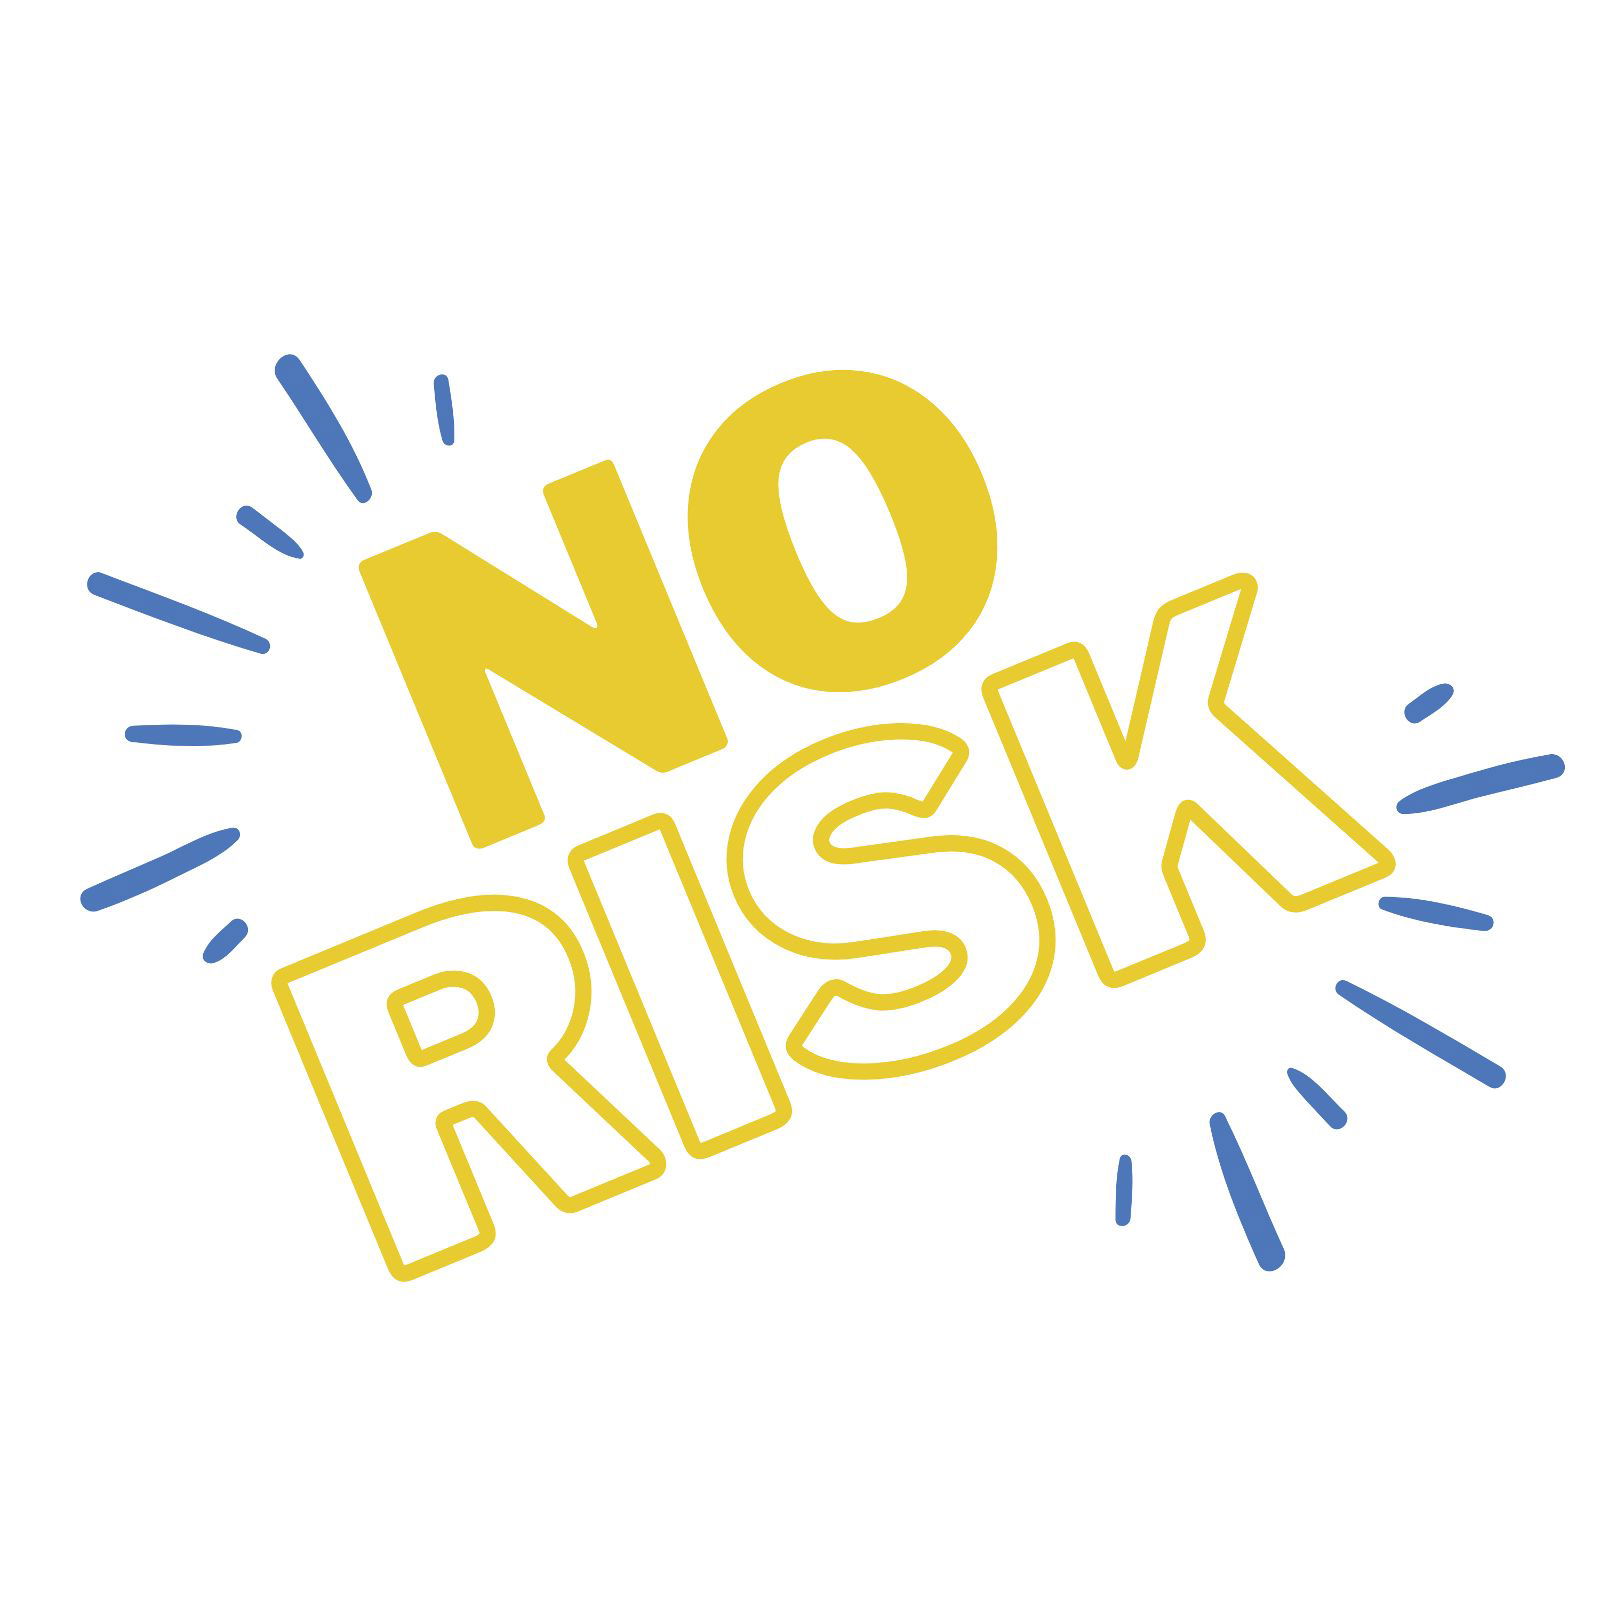 No risk